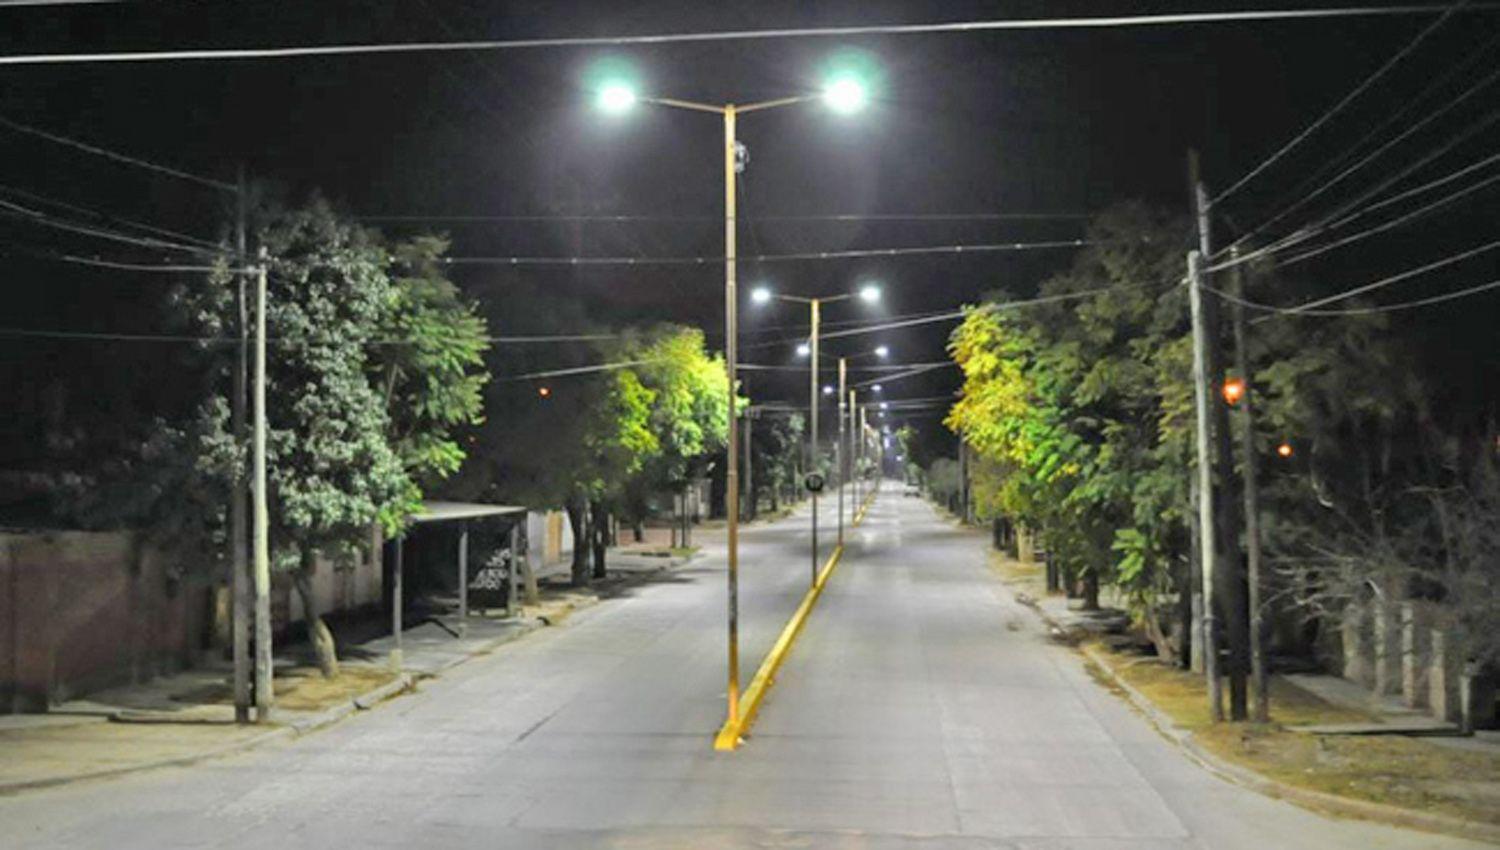 La comuna continuacutea con el Plan de reconversioacuten lumiacutenica LED en diferentes sectores de la ciudad